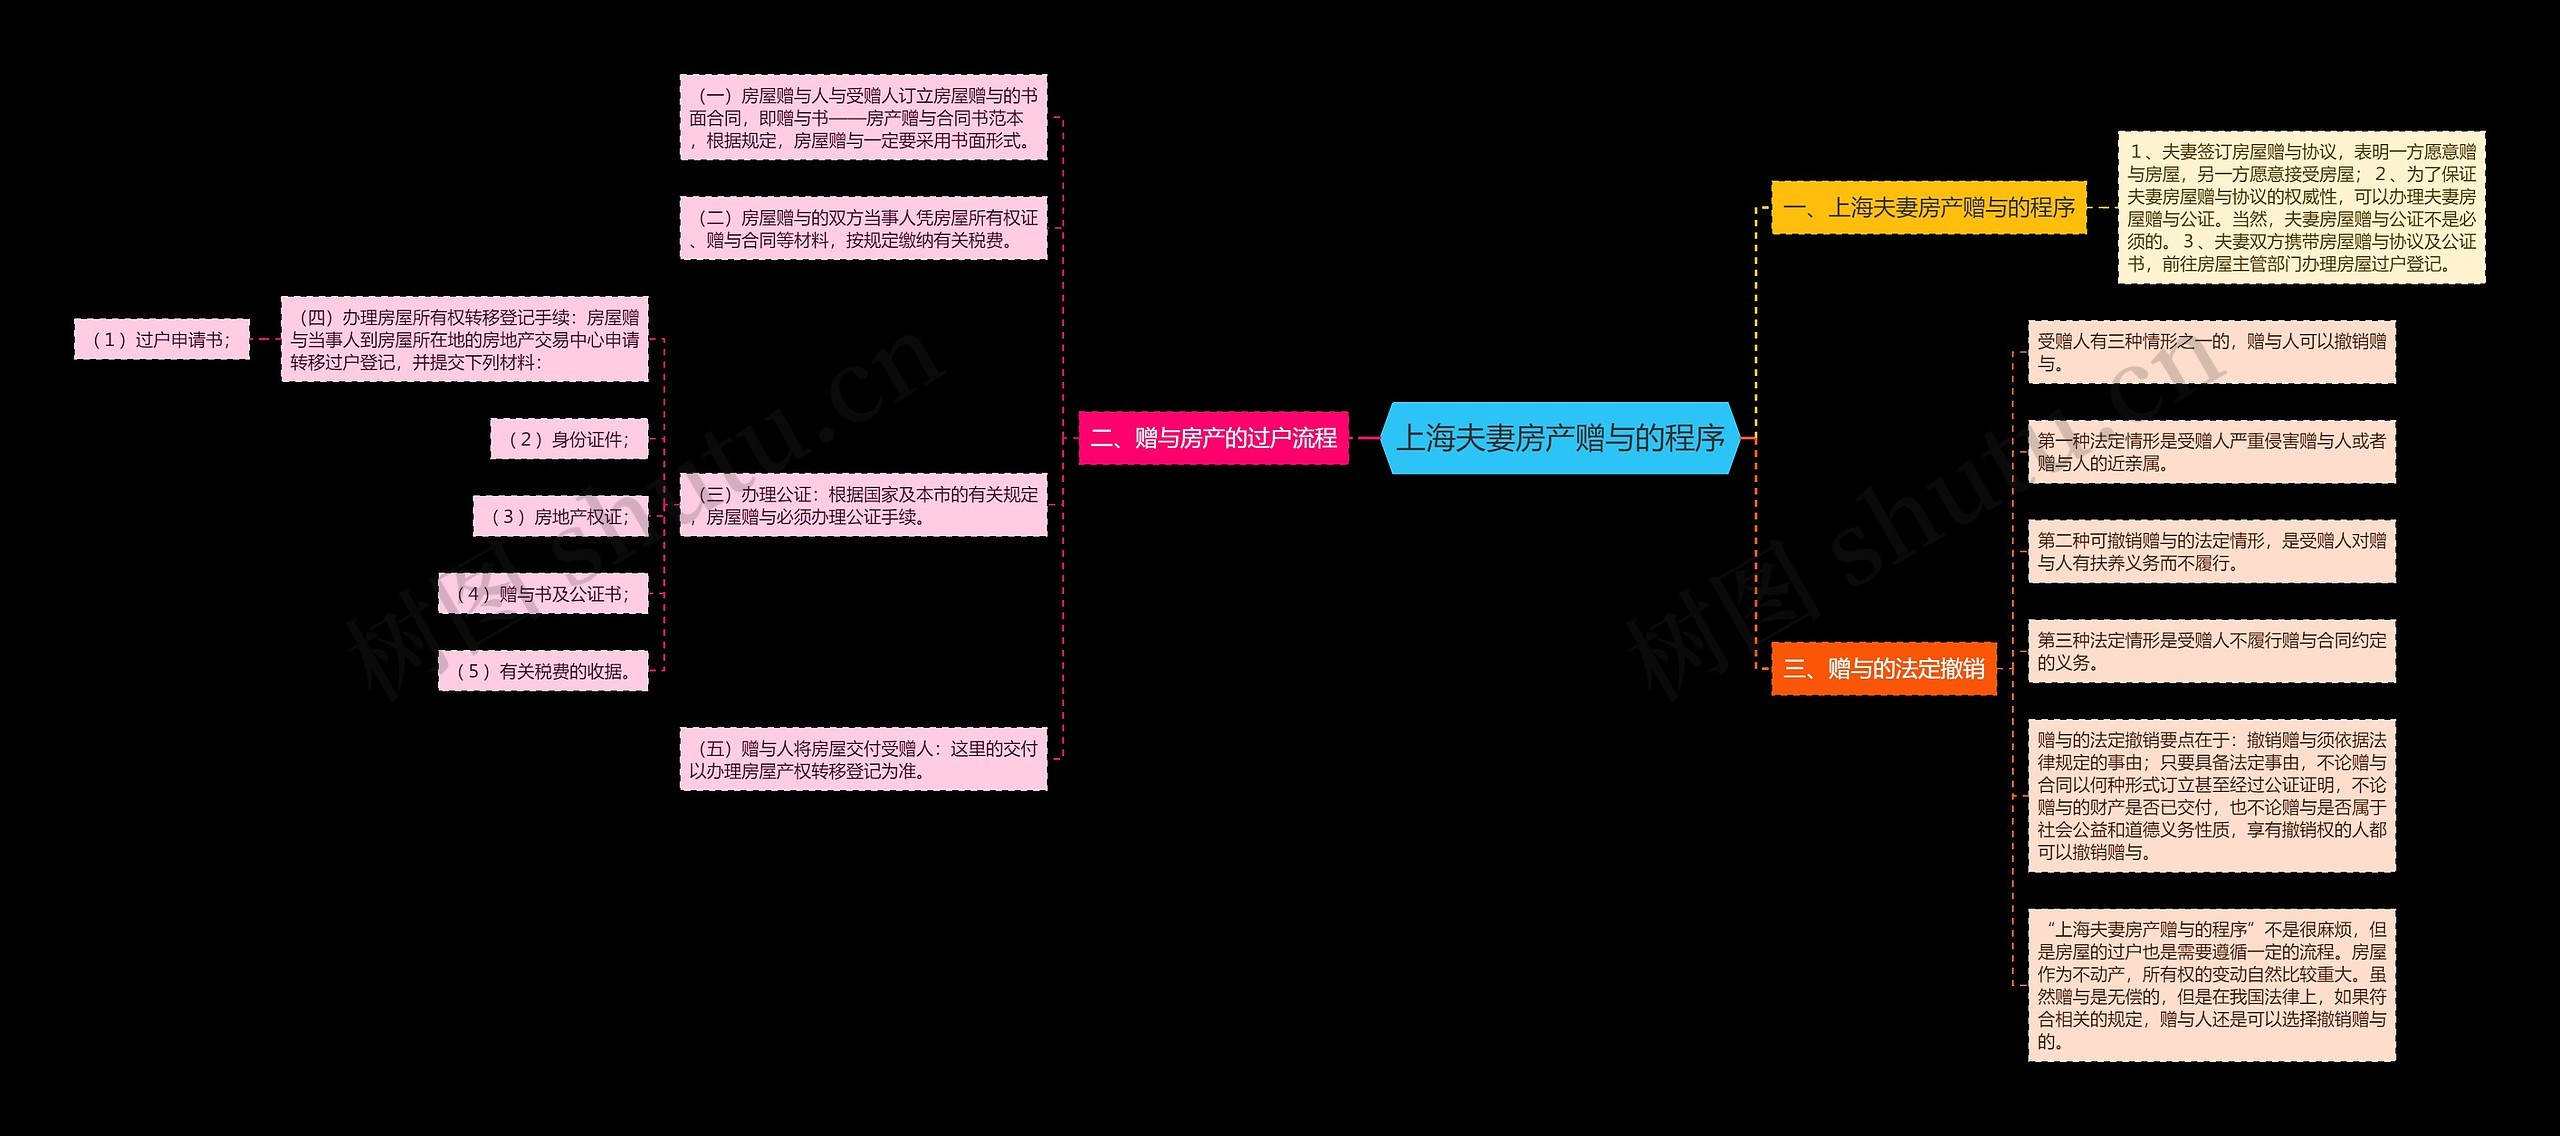 上海夫妻房产赠与的程序思维导图